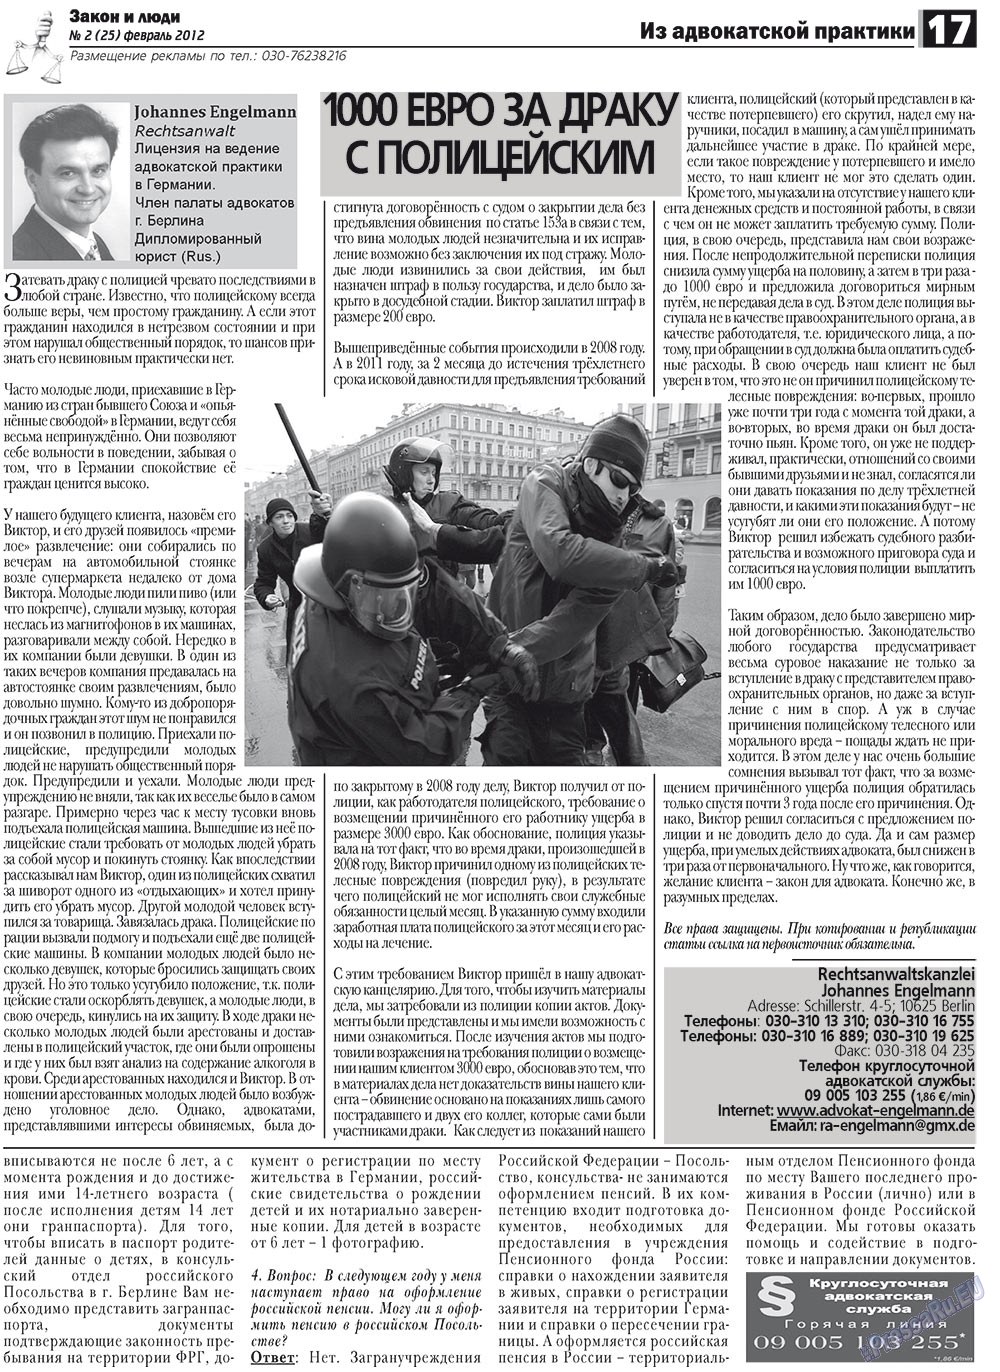 Закон и люди, газета. 2012 №2 стр.17